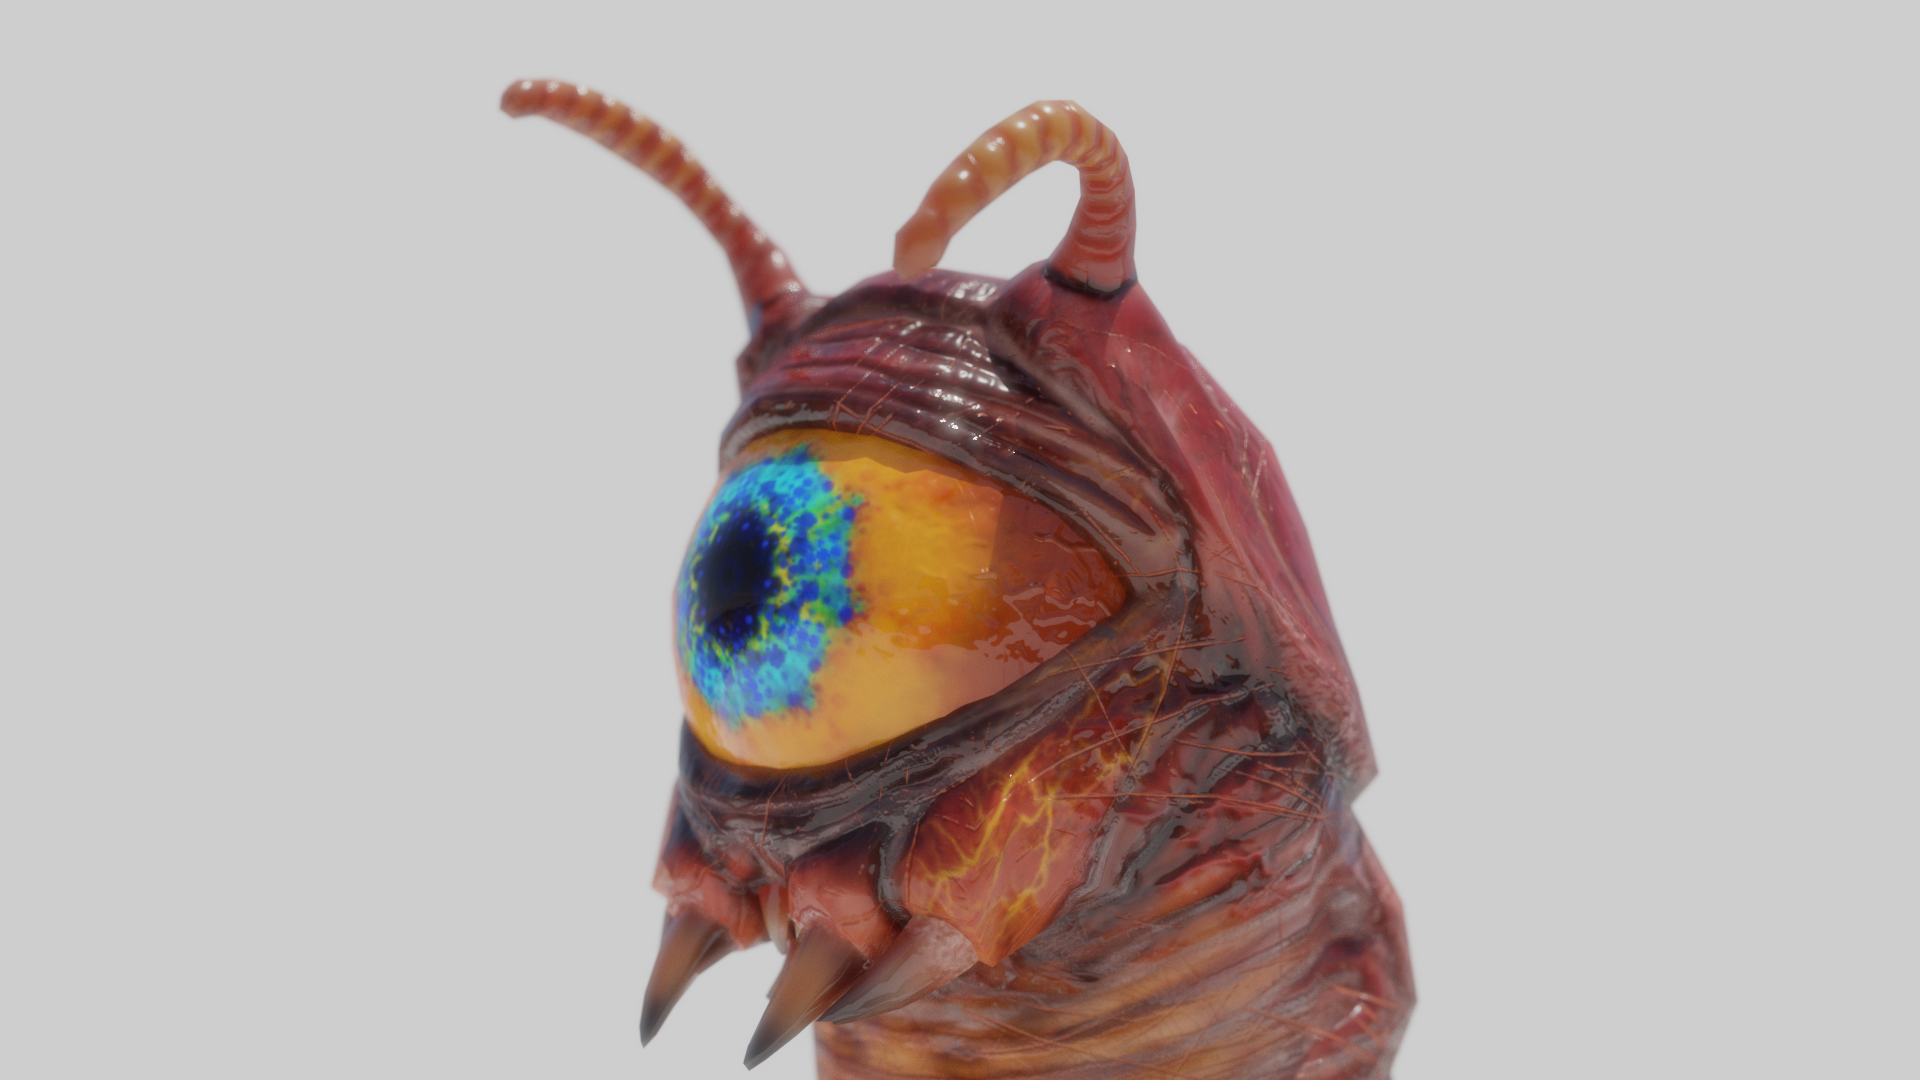 Centipede eyeball monster, face view.